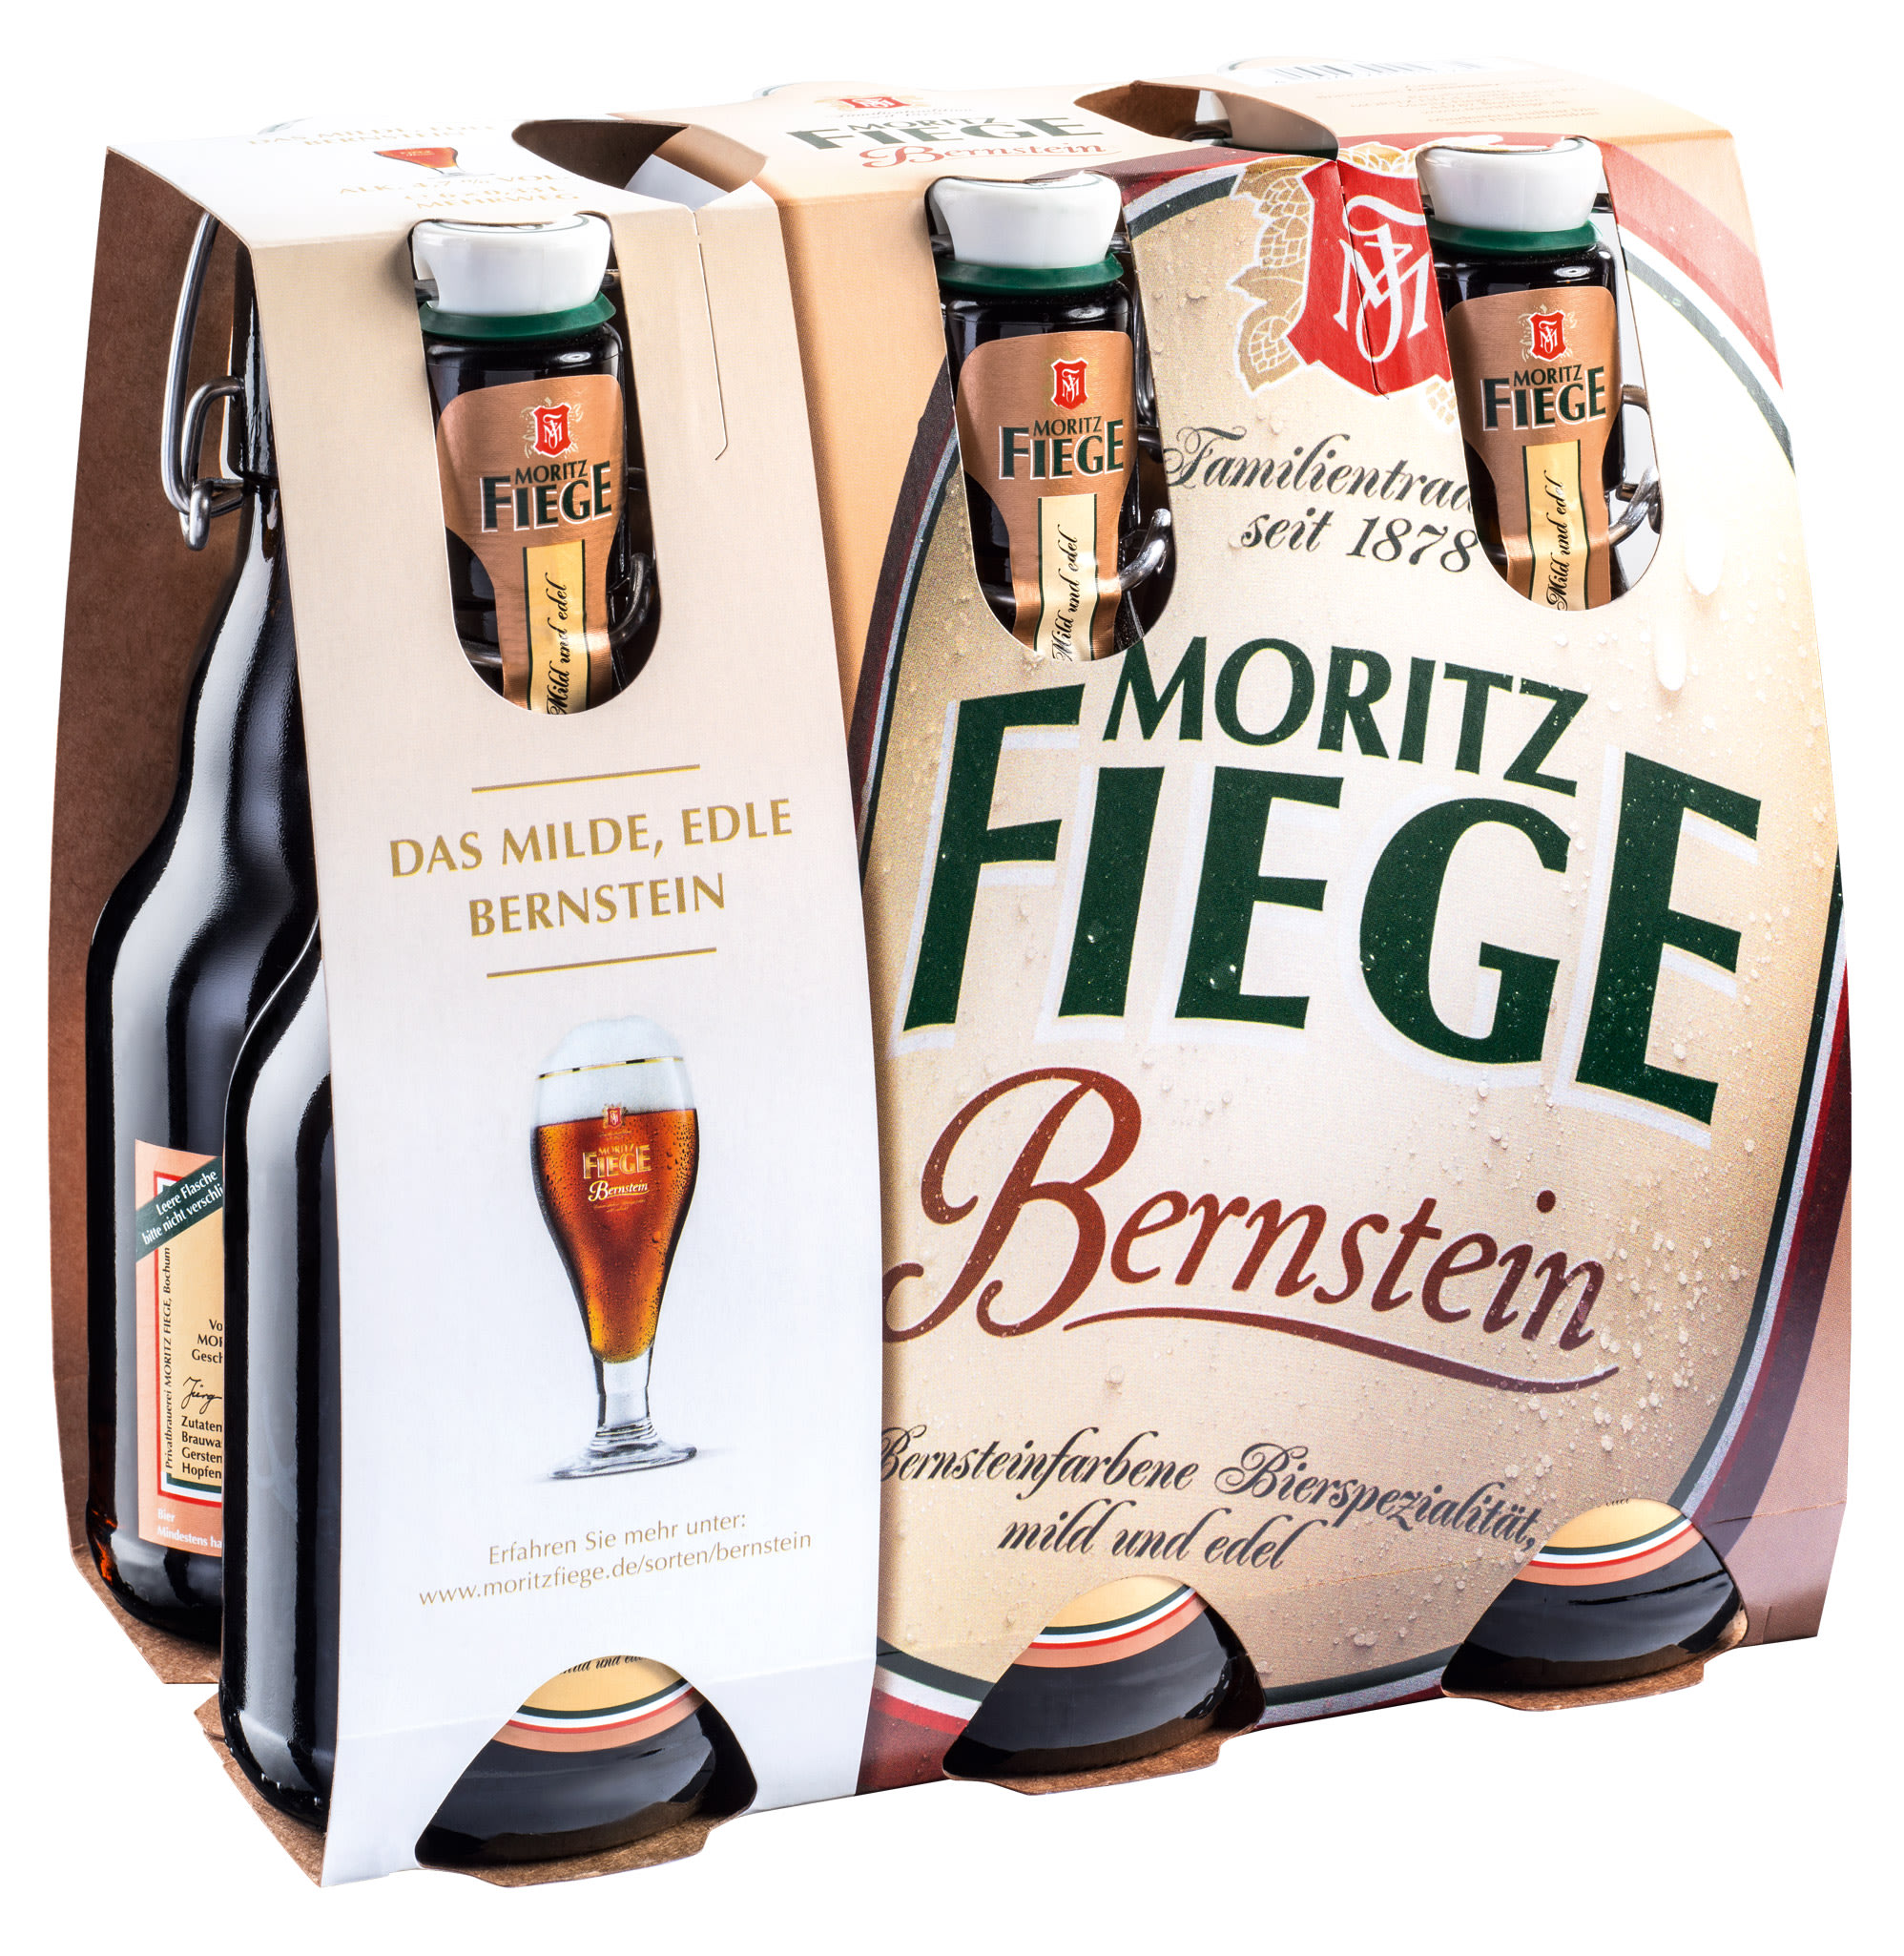 Moritz Fiege Bernstein Bügel Kasten 3 x 6 x 0,33 l Glas Mehrweg